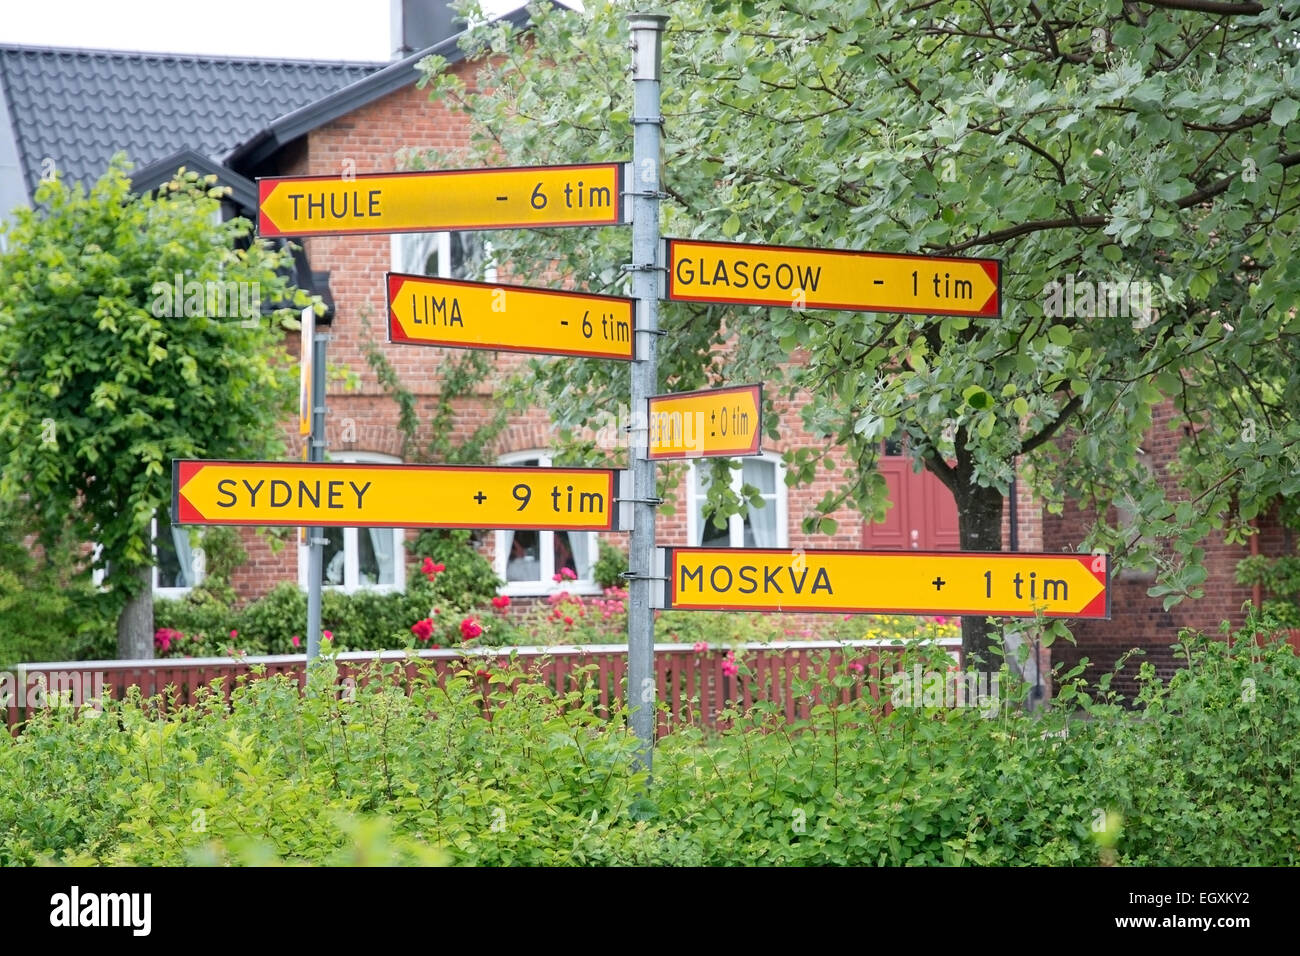 AHUS, Schweden - 3. Juli 2014: Humorvolle Zeichen Sie Zeitverschiebung nach Thule, Glasgow, Bern, Moskau und Sydney am 3. Juli, Stockfoto